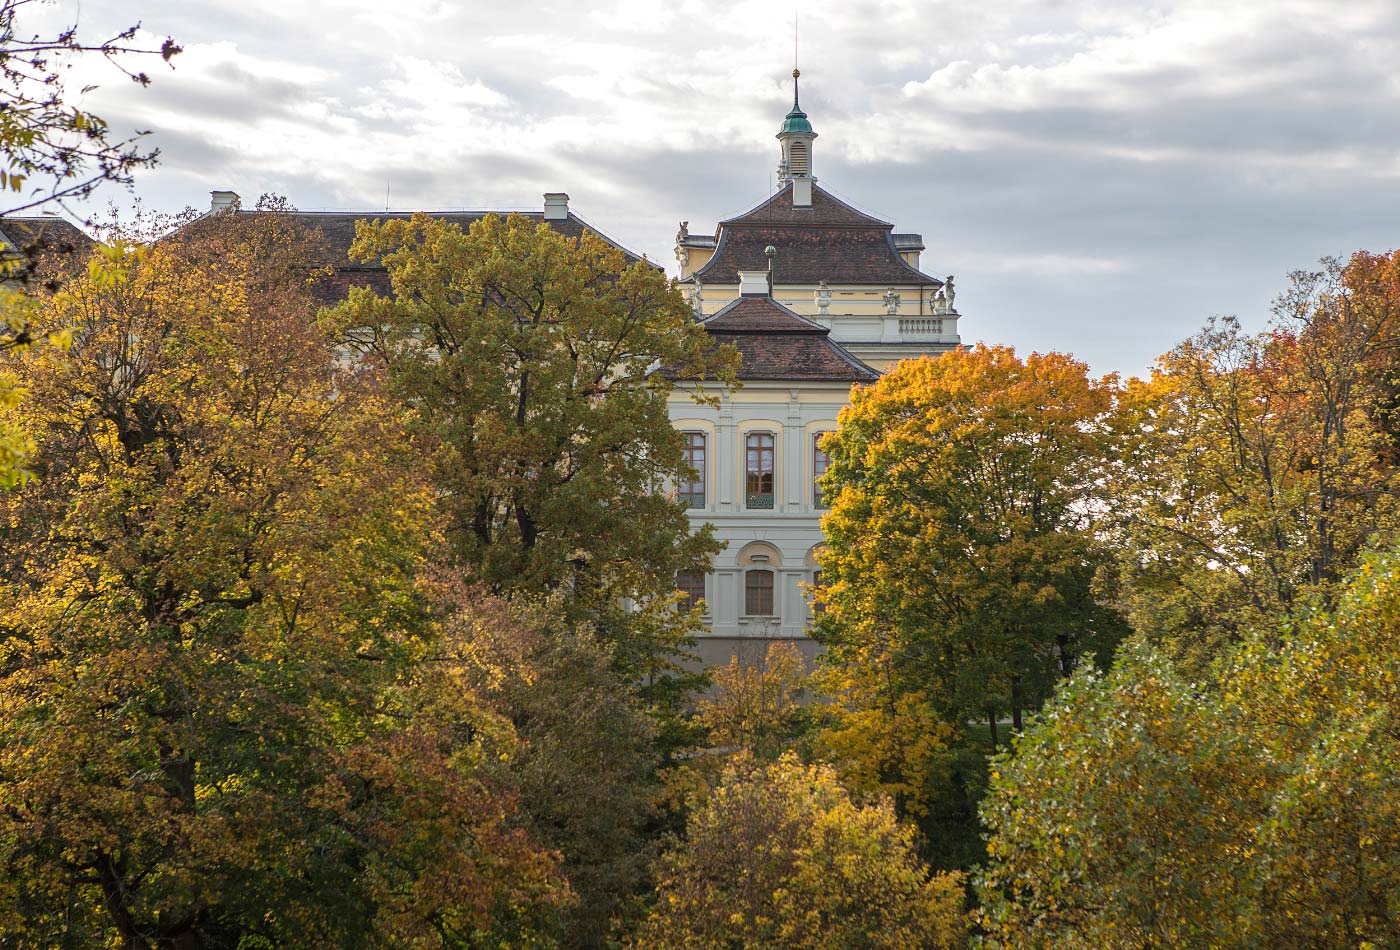 Blick auf das Schloss, im Vordergrund herbstlich gefärbte Bäume.